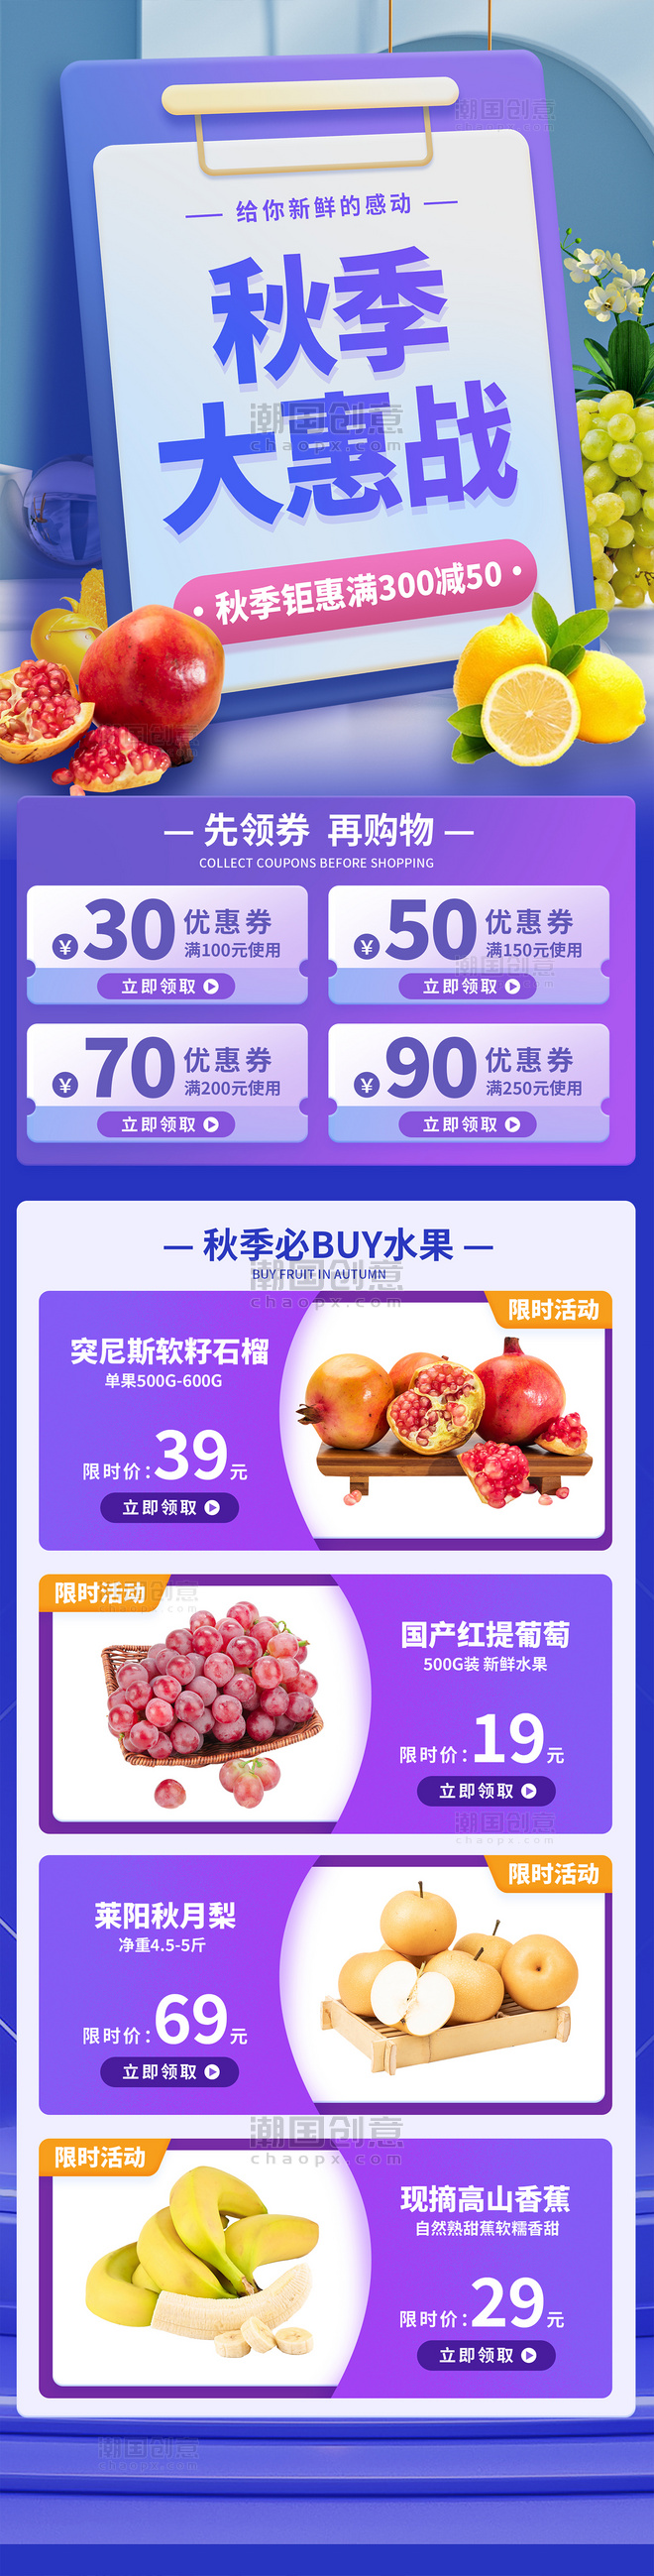 秋季水果大惠战长图H5设计生鲜超市促销活动秋天